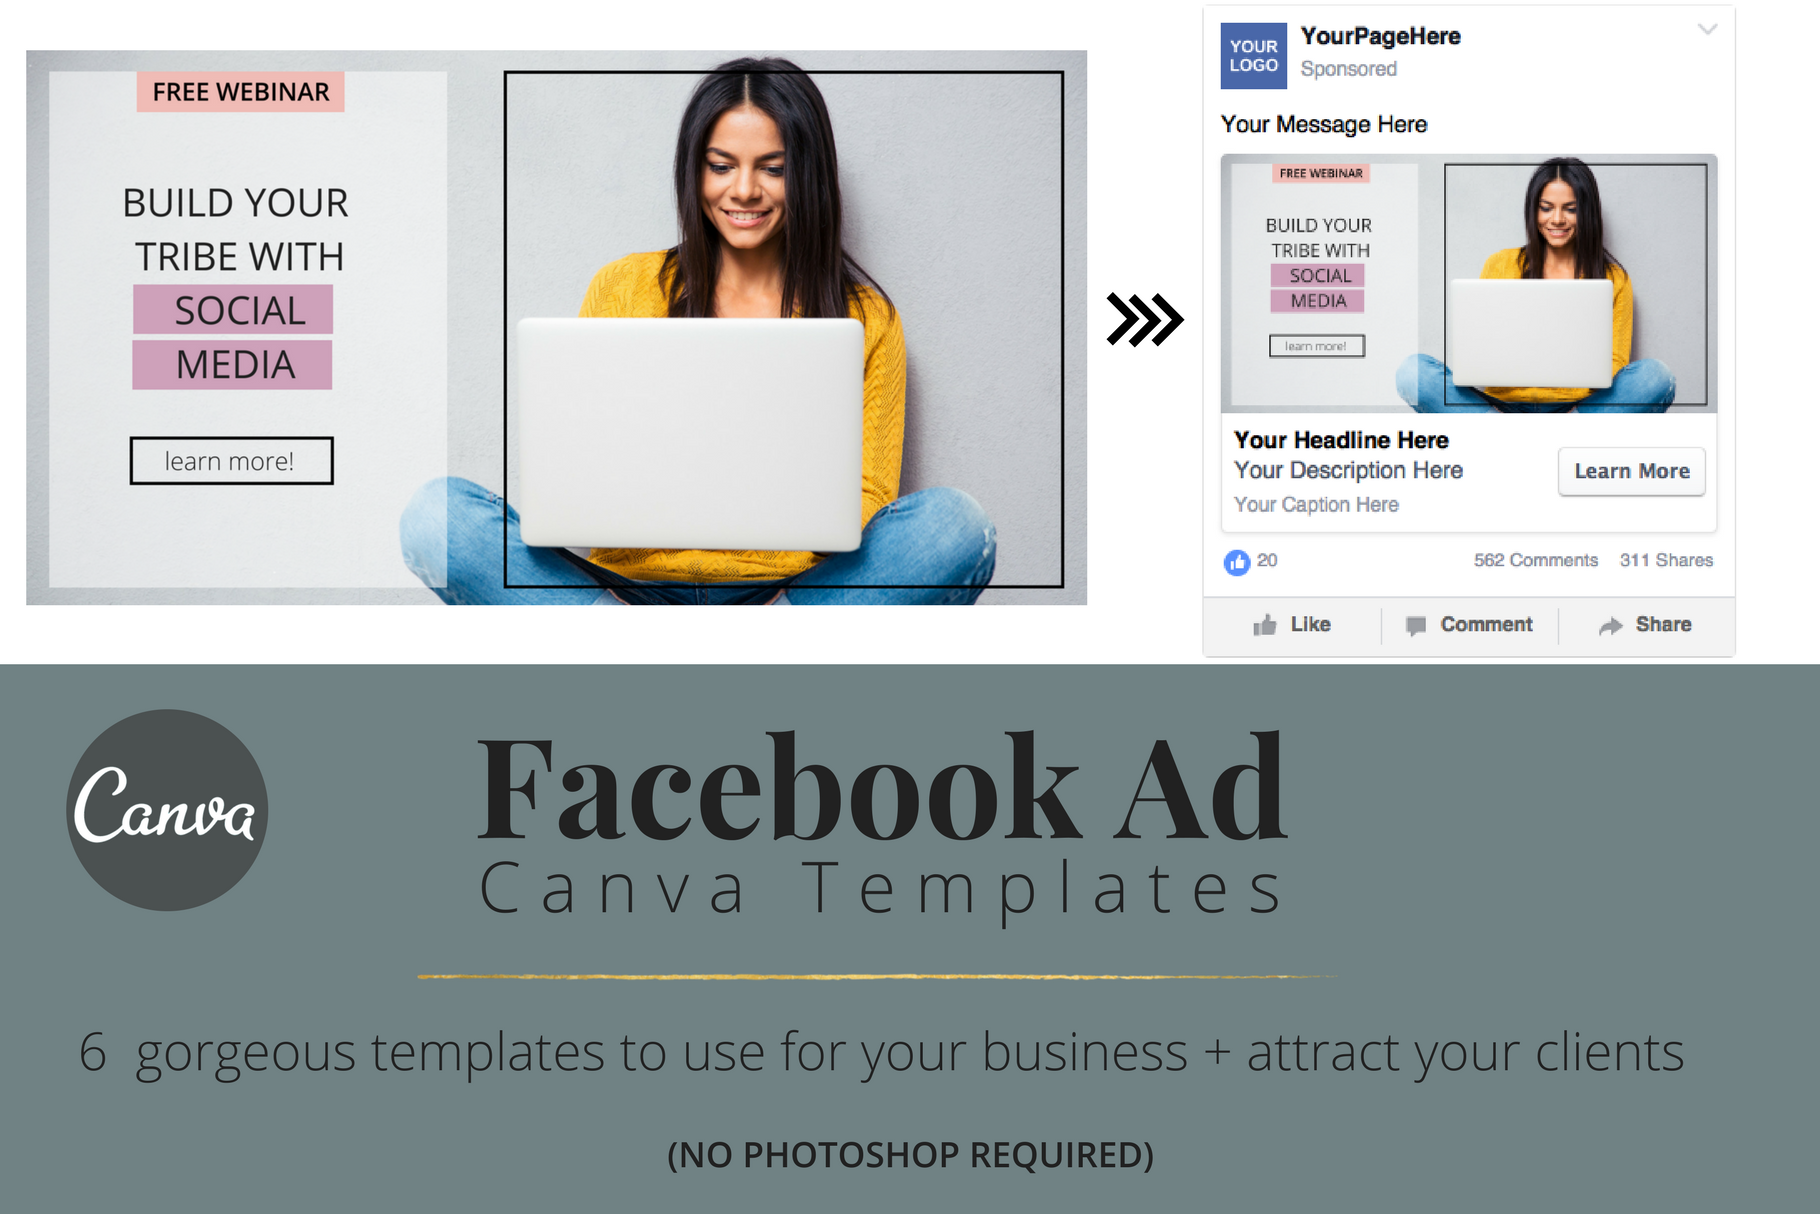 CANVA Facebook Ad Templates Facebook Templates Creative Market